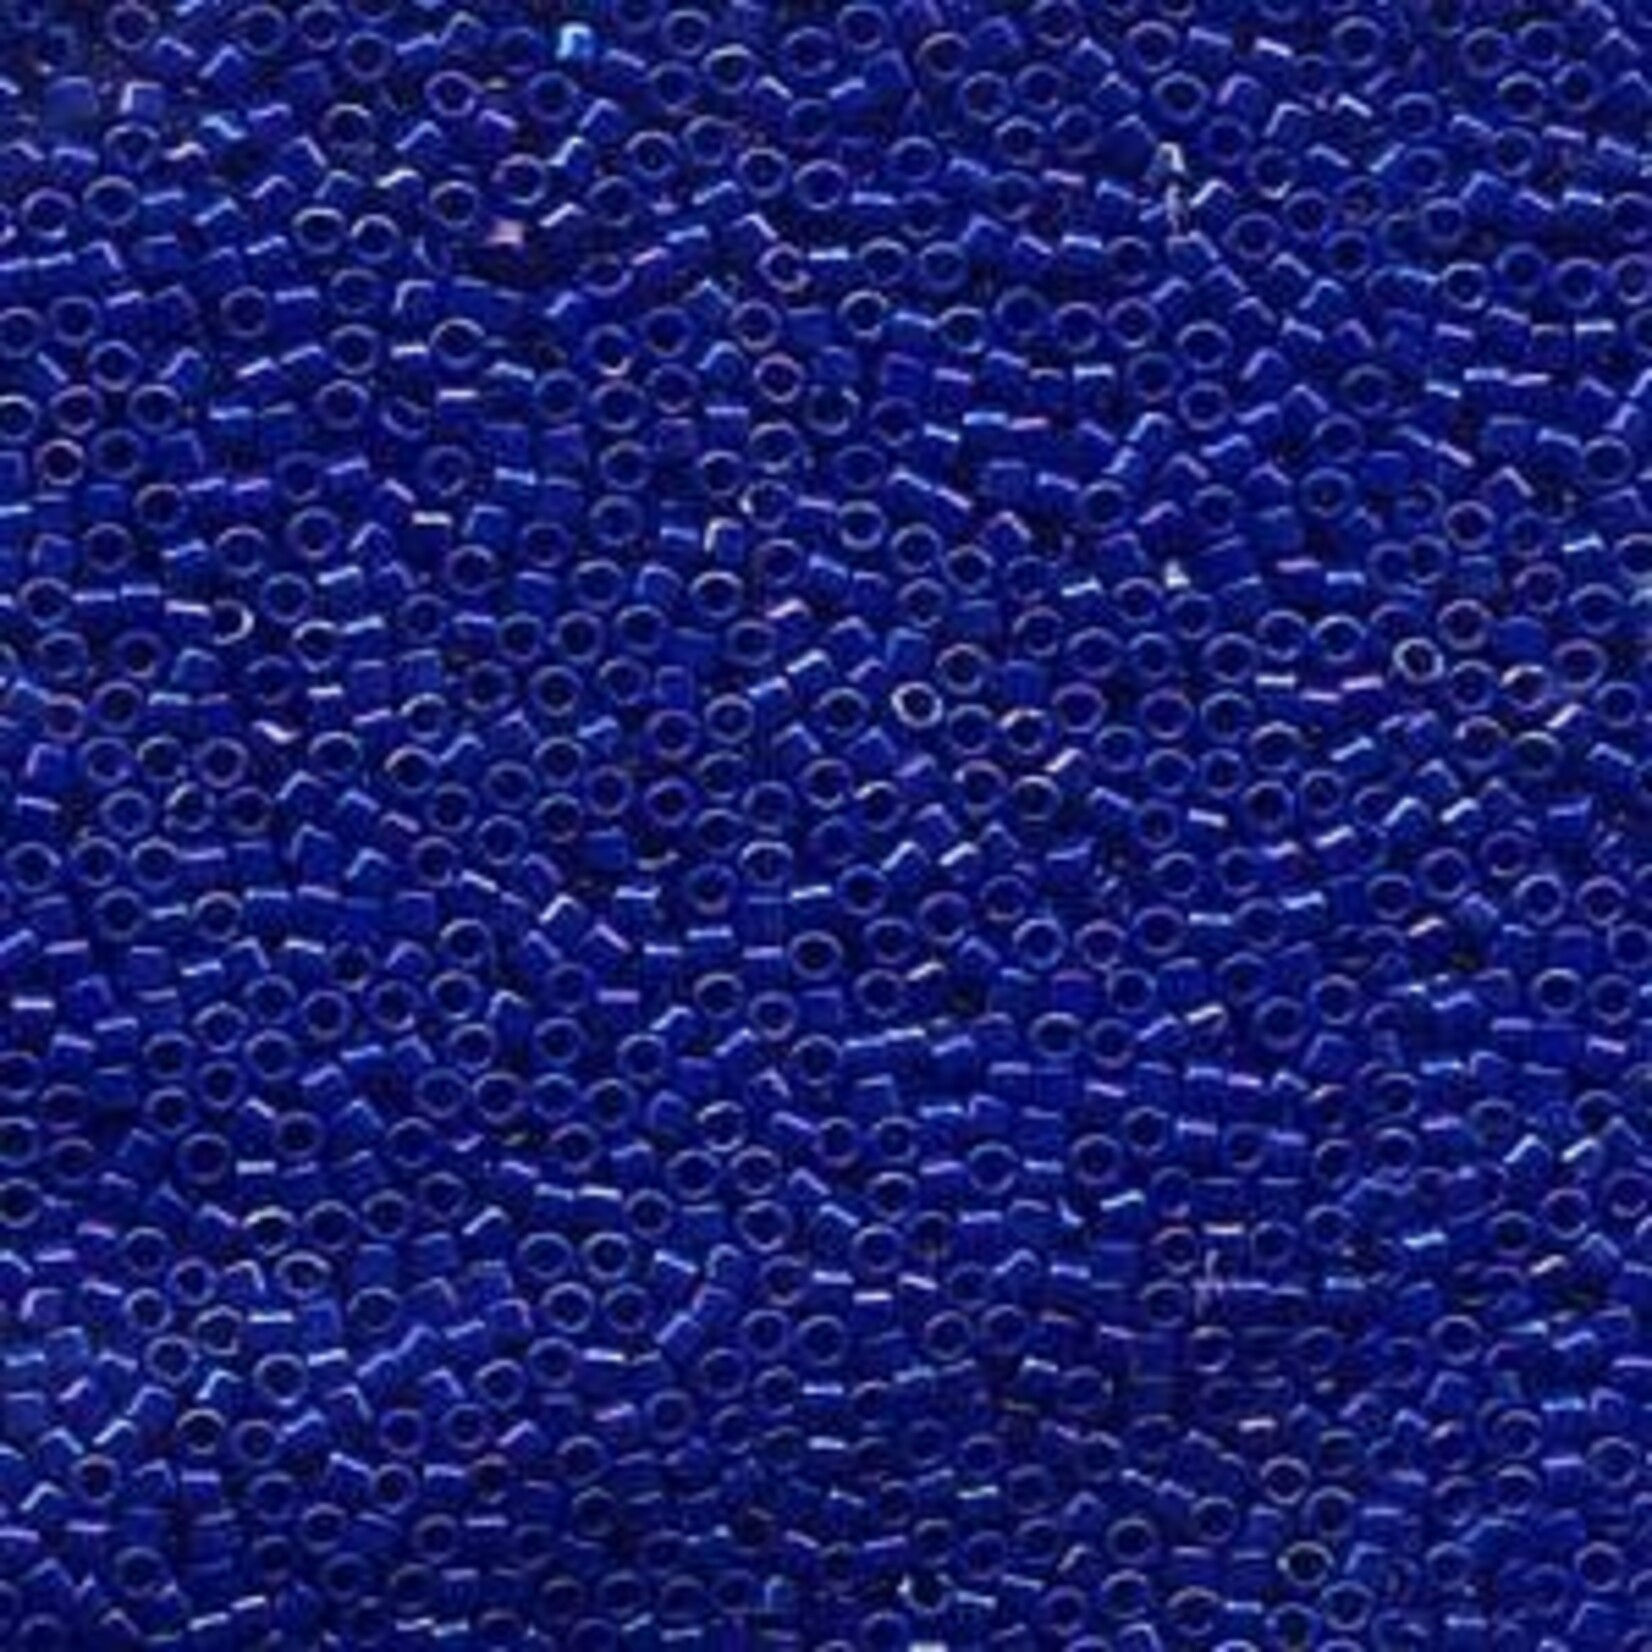 MIYUKI Delica 10-0 Opaque Royal Blue Luster 10g